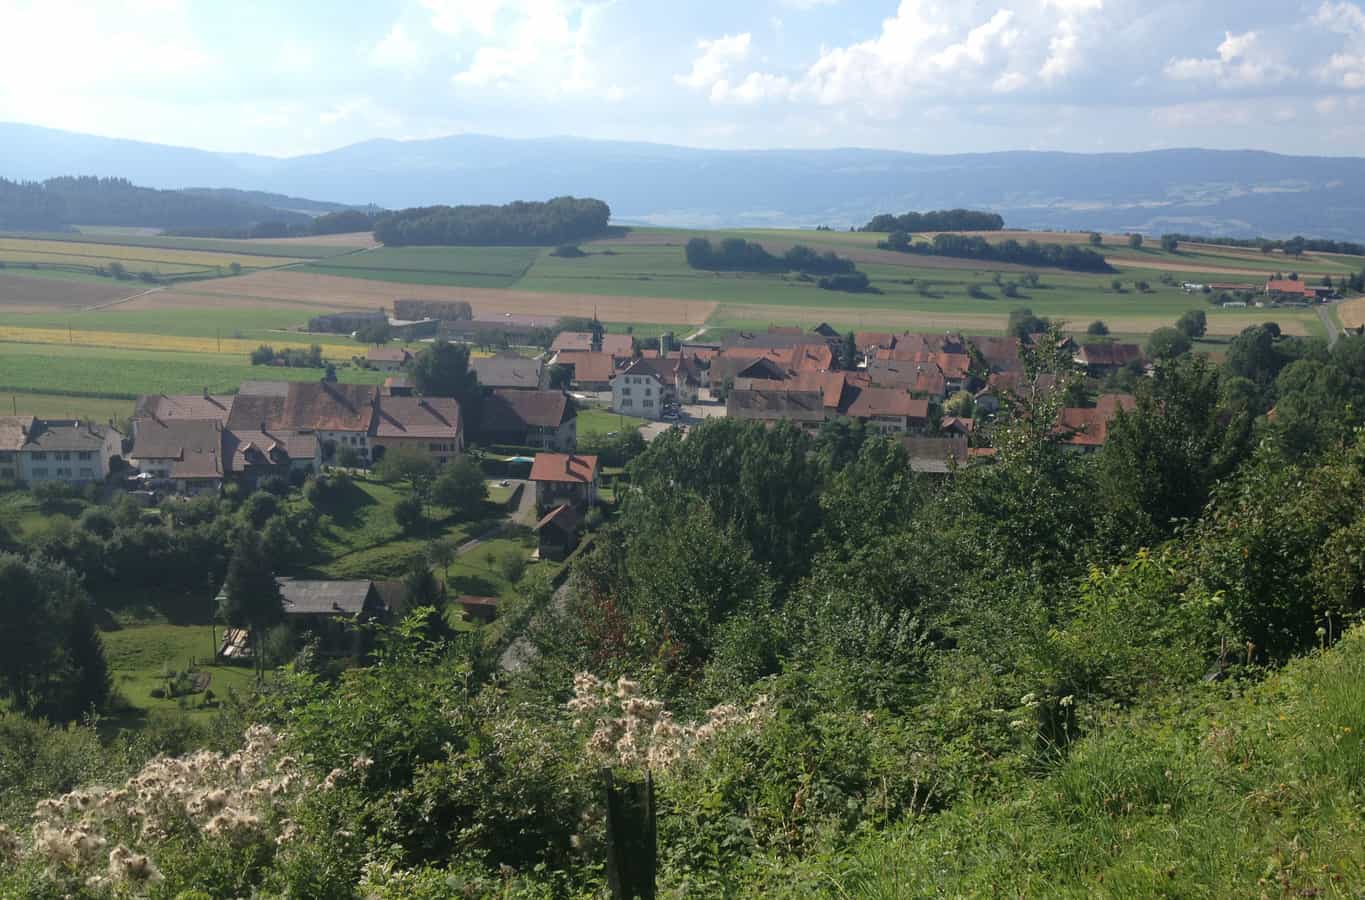 Molondin in the canton of Vaud in Switzerland.